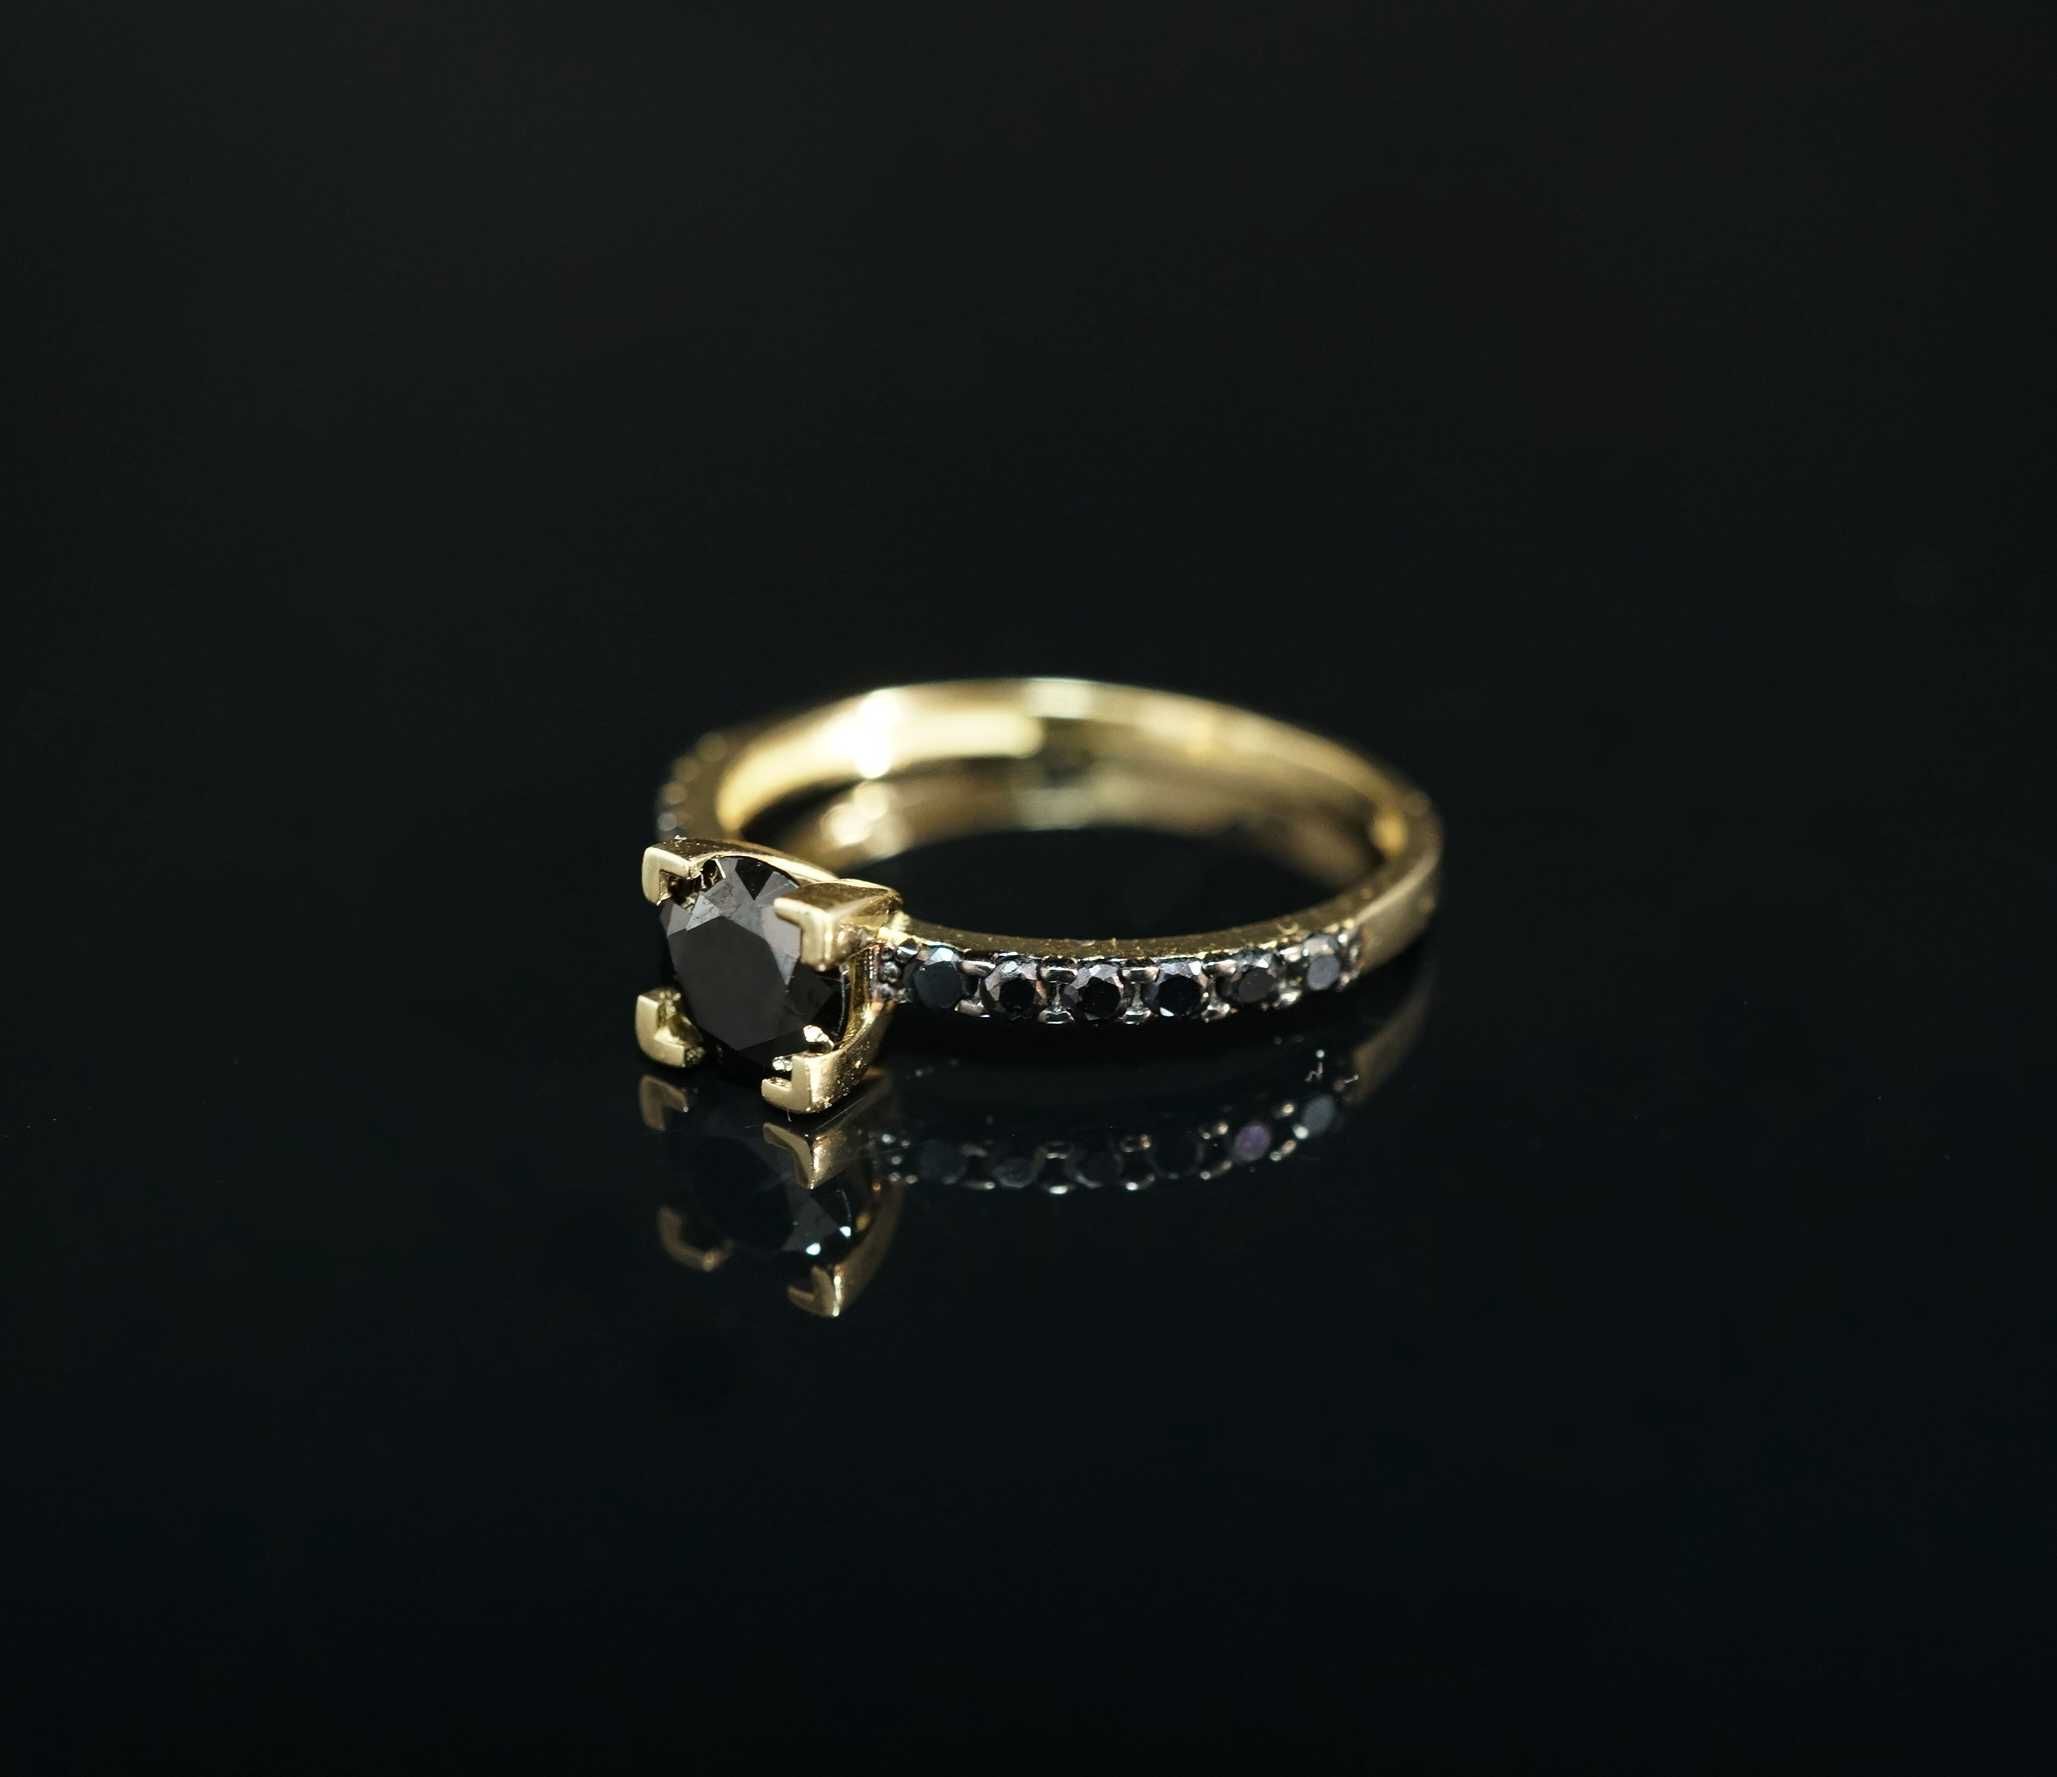 Złoto 585 - złoty pierścionek z czarnymi cyrkoniami. Rozmiar 16